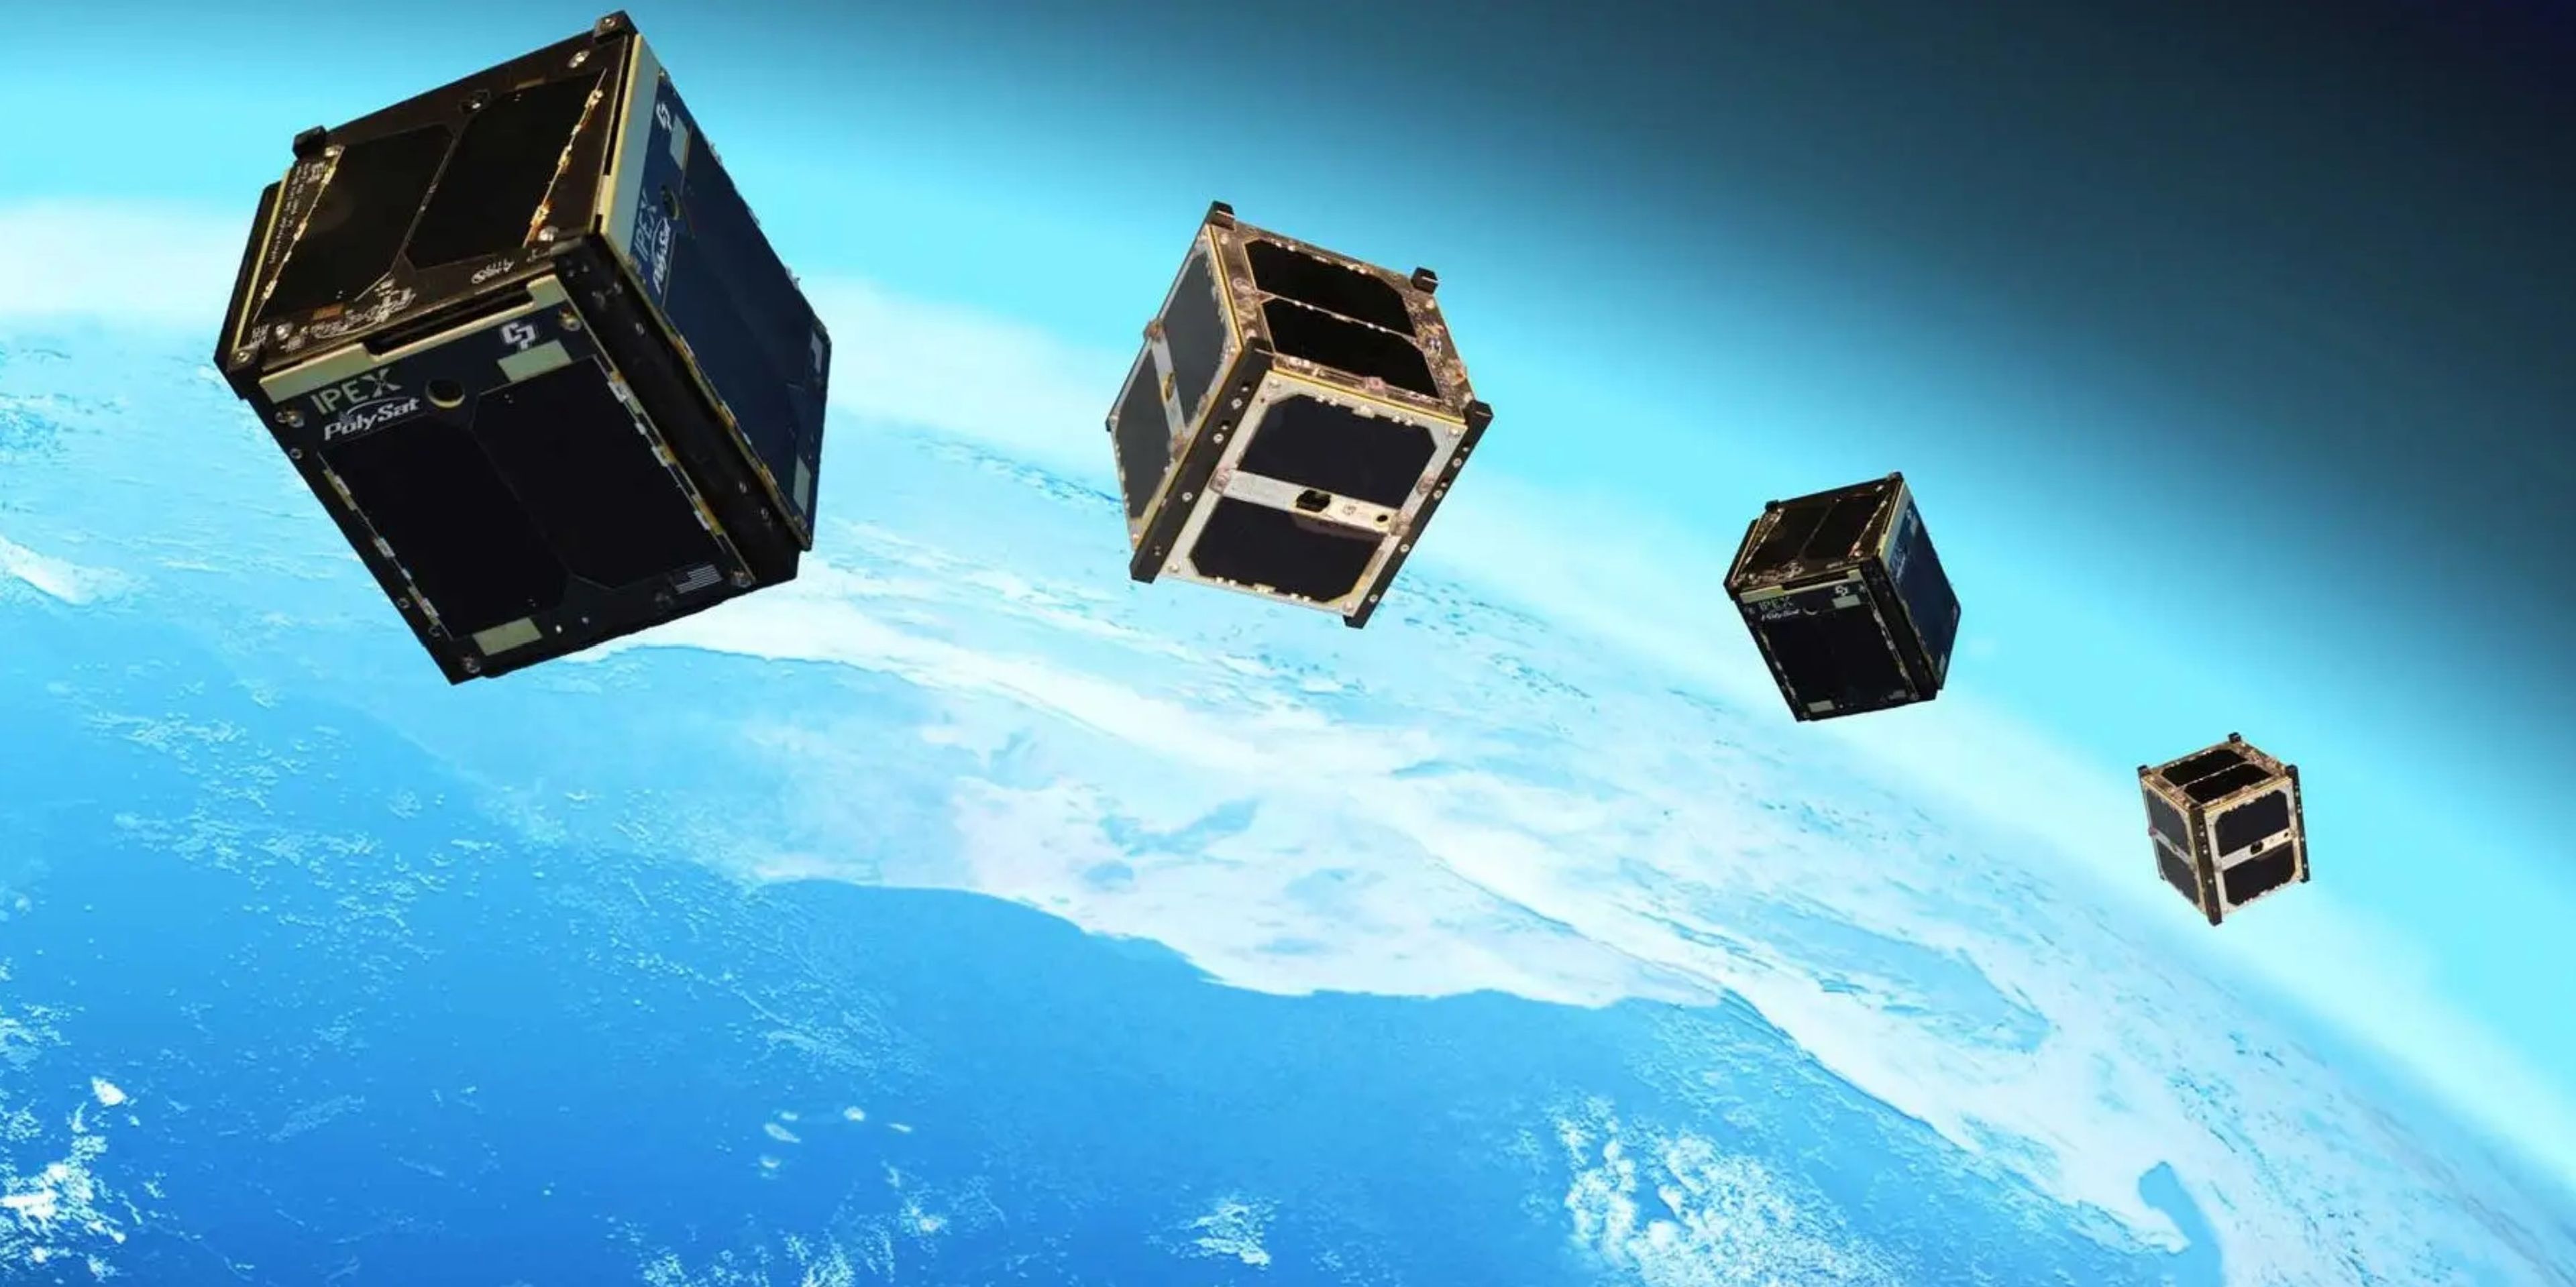 CubeSat satélite hackers